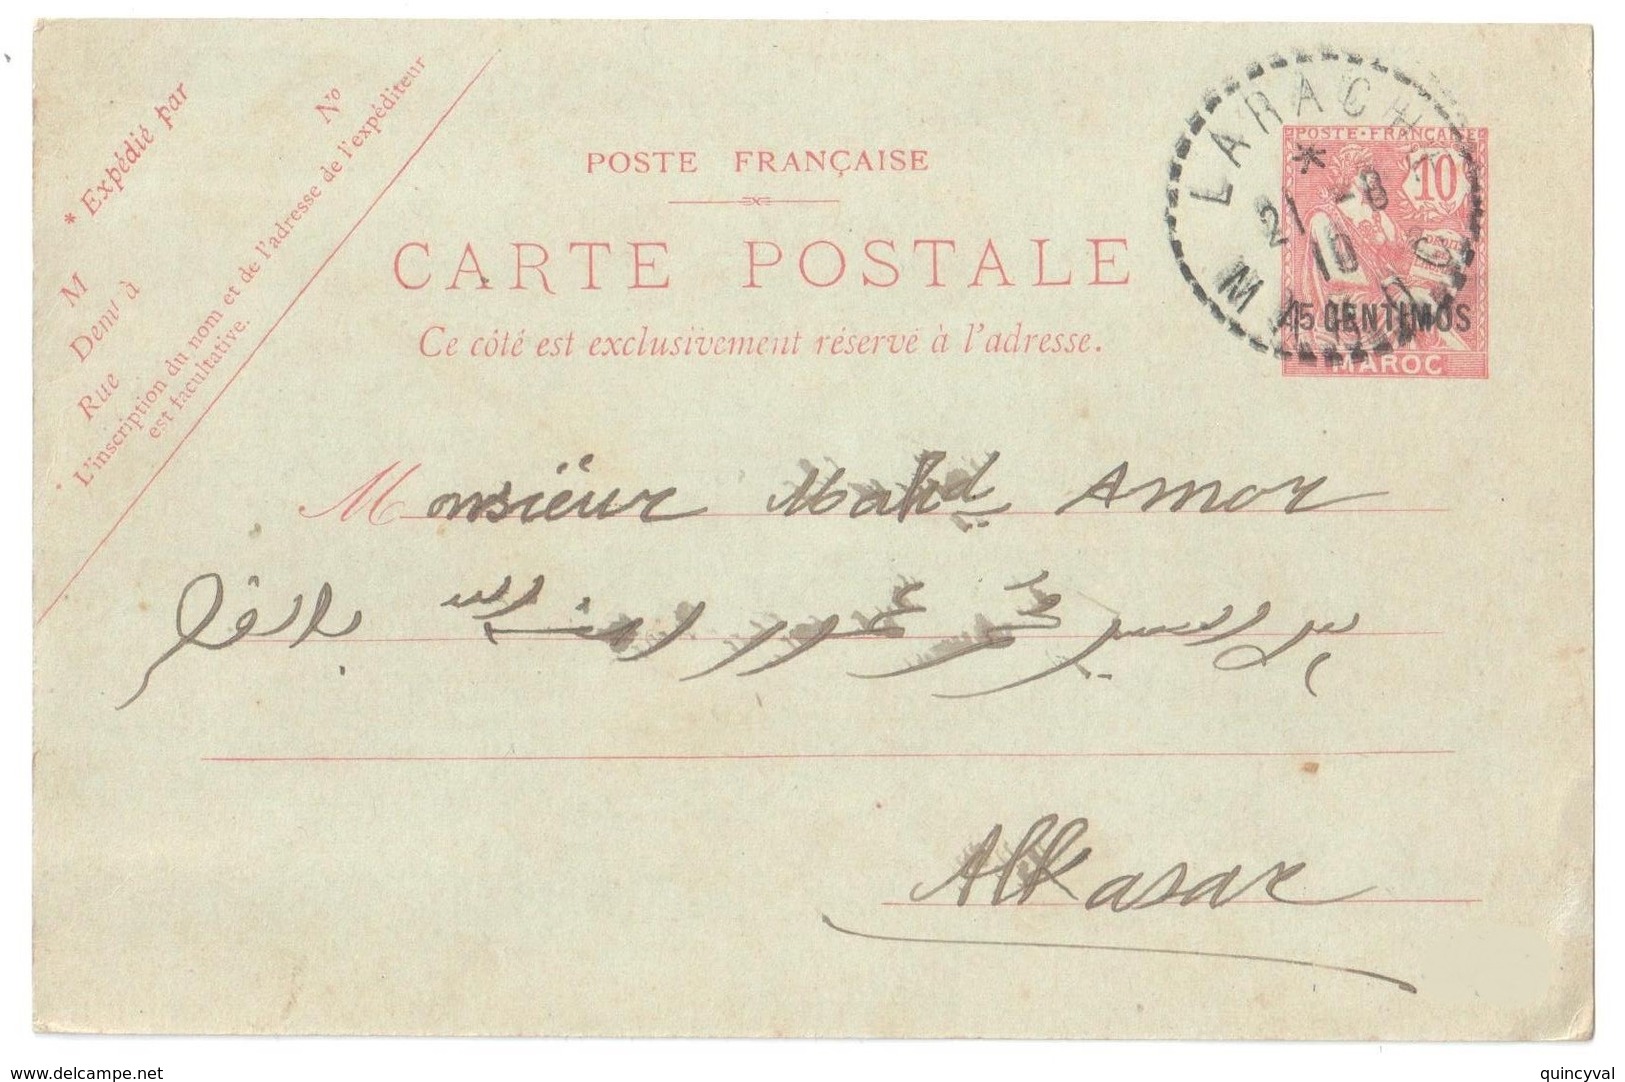 LARACHE Maroc FB04 Carte Postale Entier Mouchon 10c Surcharge 5 CENTIMOS Dest Alkasar Texte En Arabe Ob 21 8 1910 - Lettres & Documents